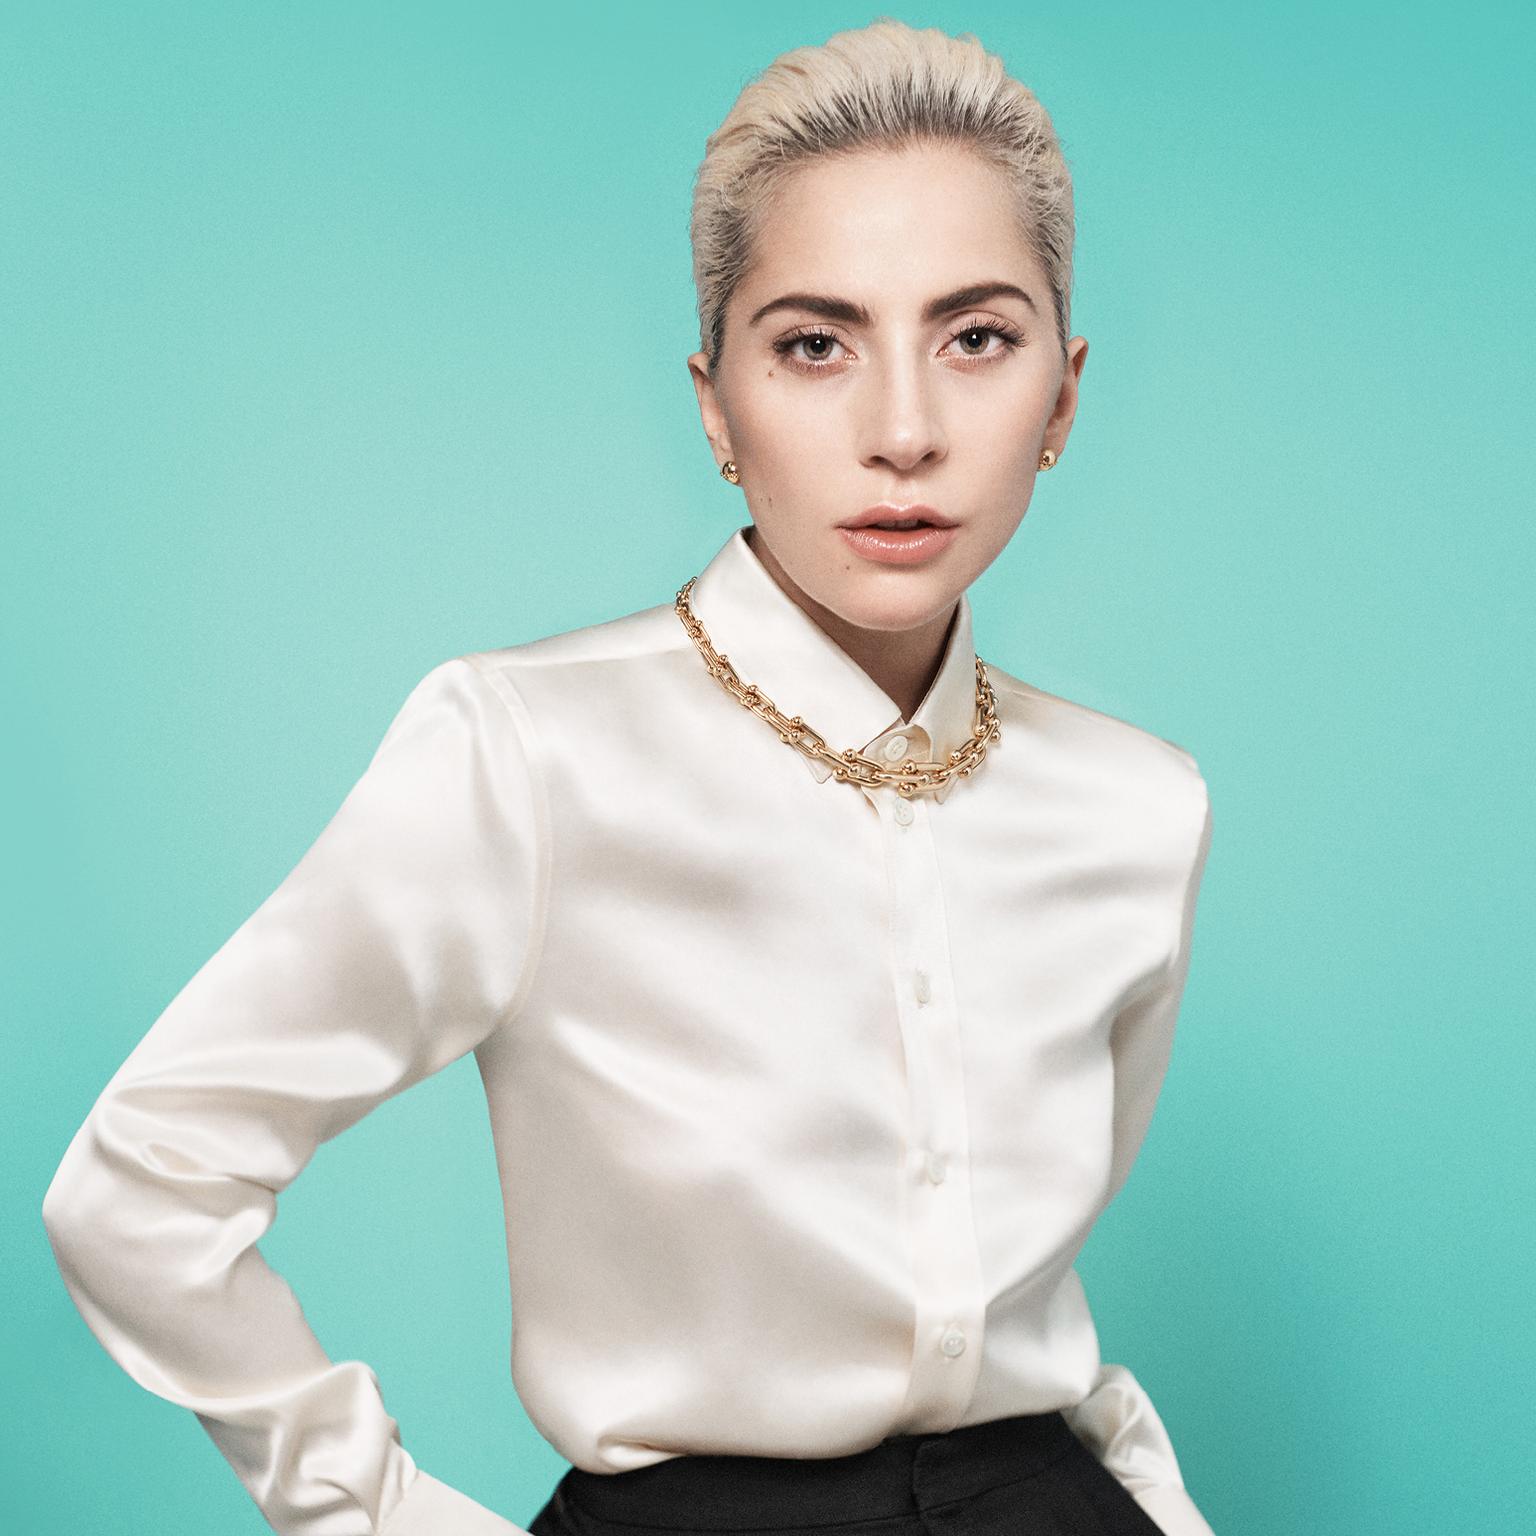 Lady Gaga models the Tiffany HardWear collection